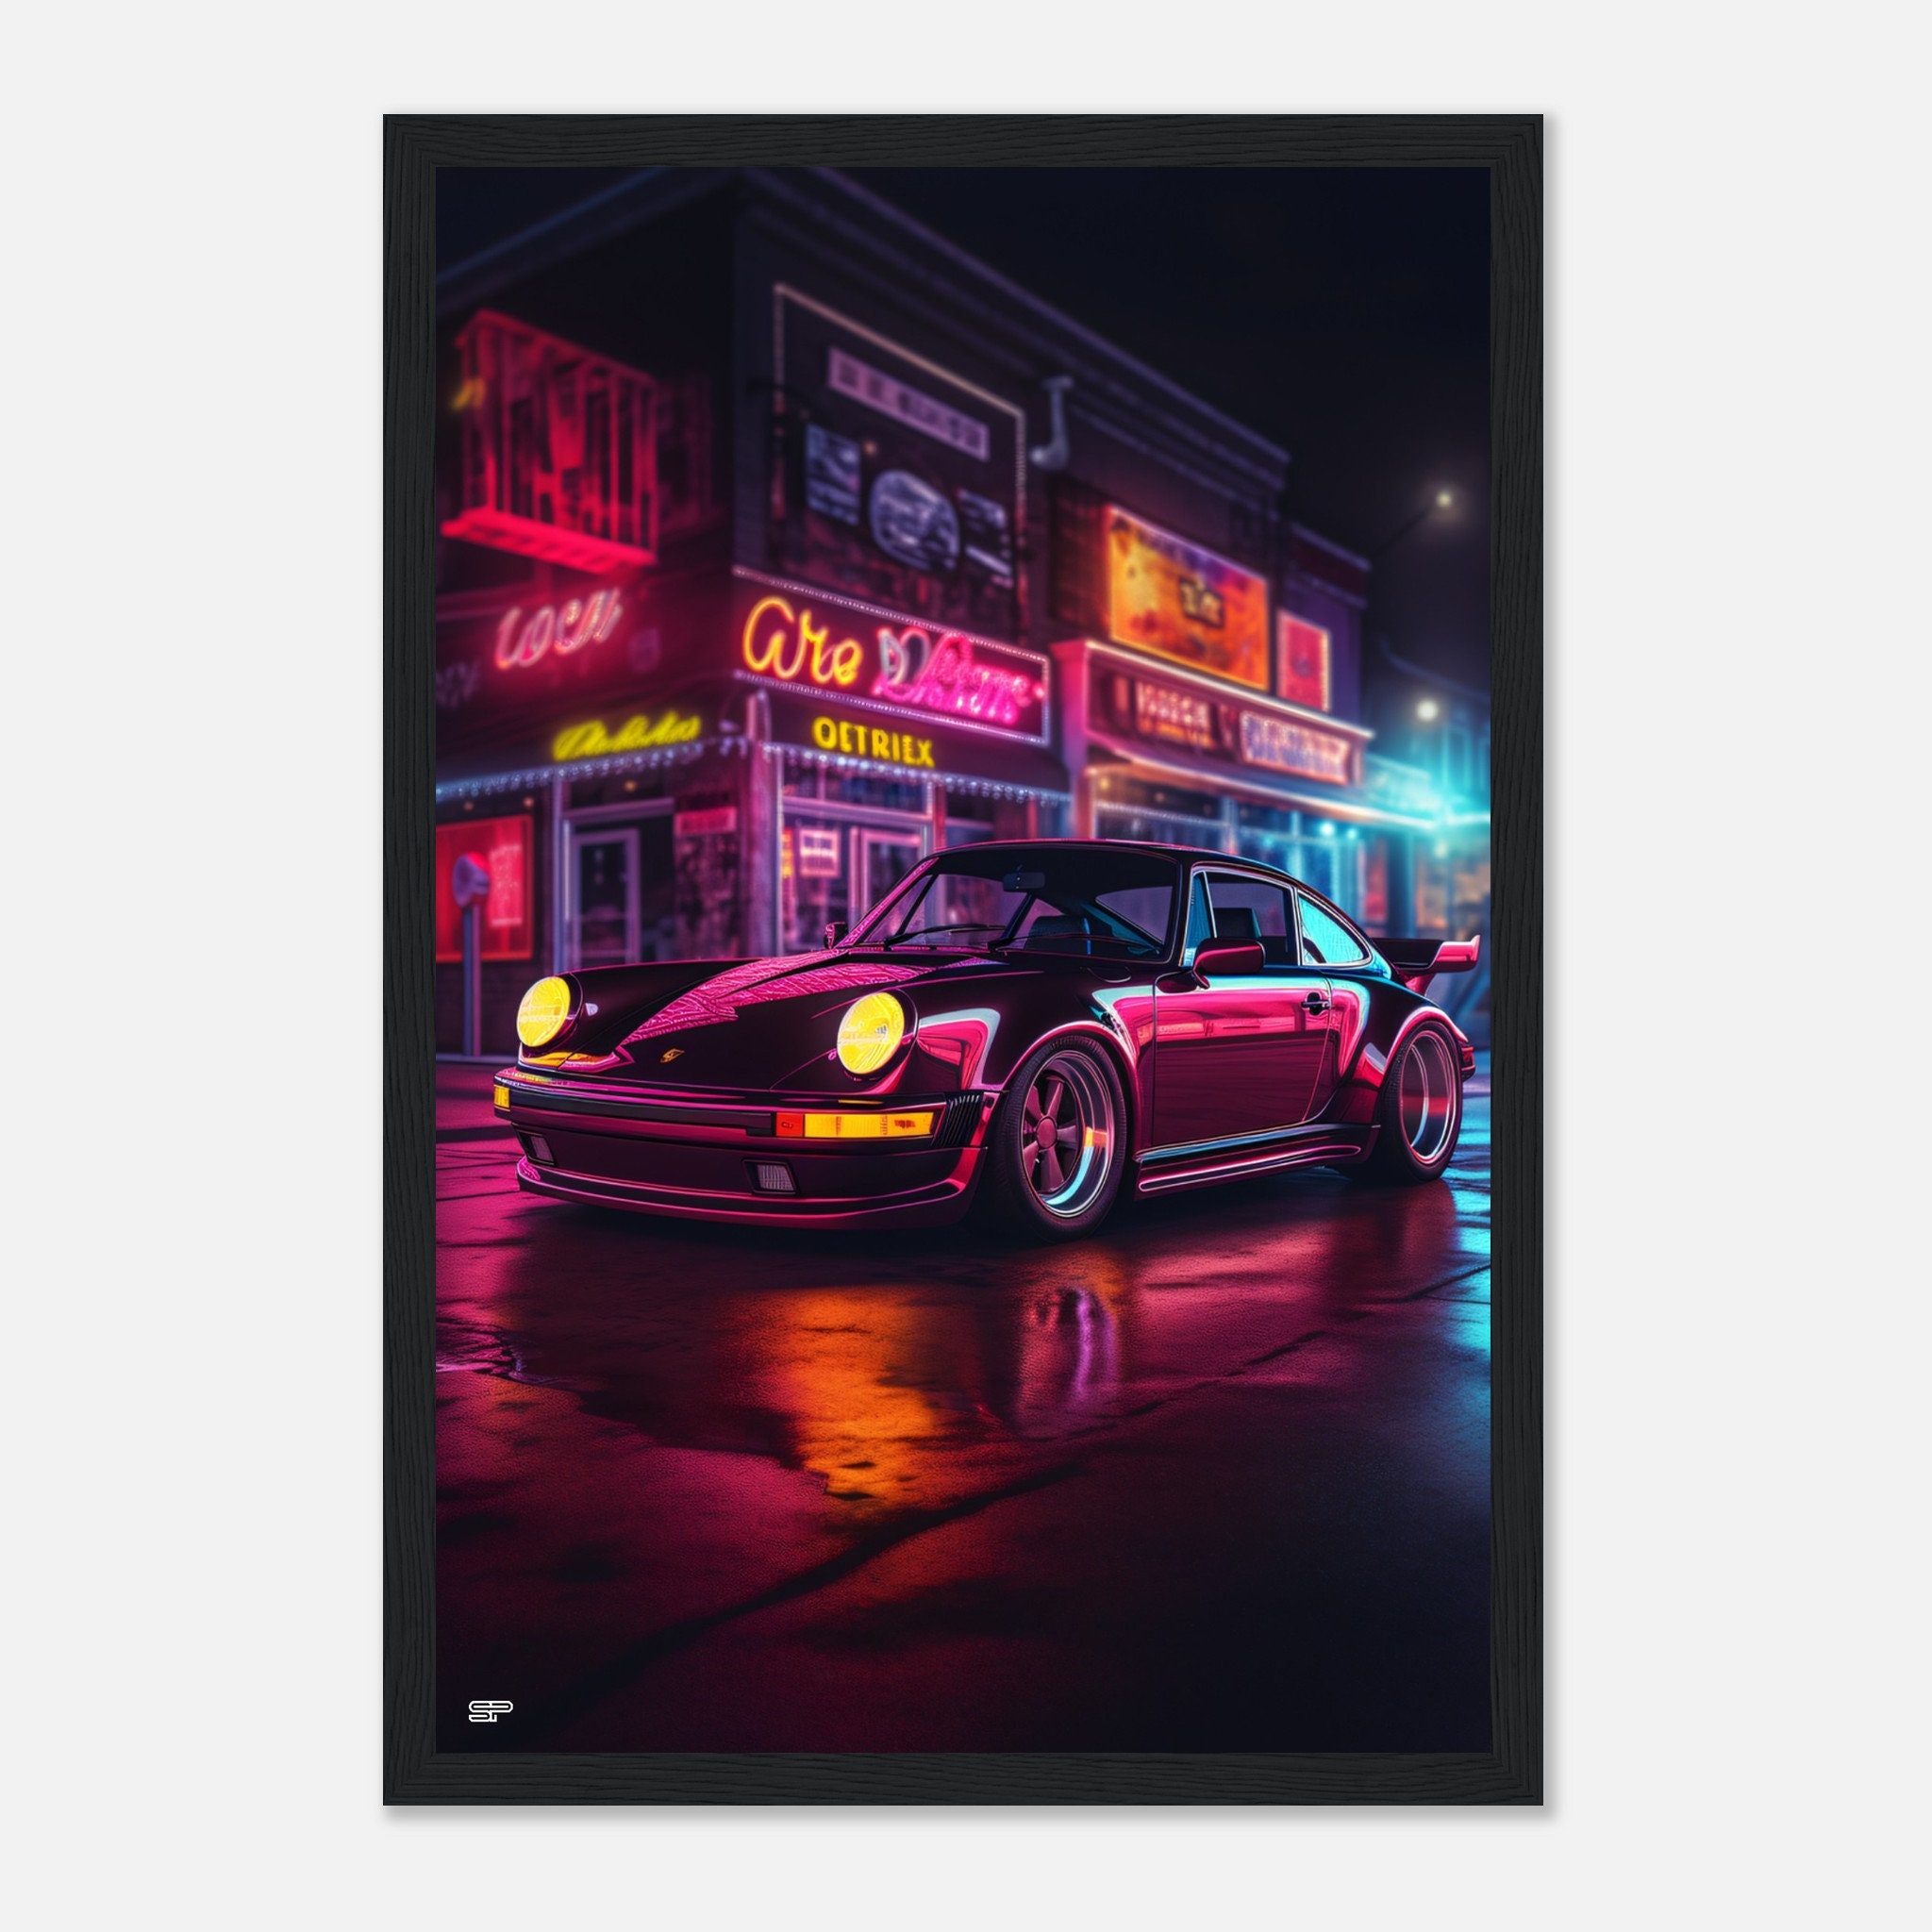 Coupé-auto im neon-stil auf dunklem hintergrund mit warmer